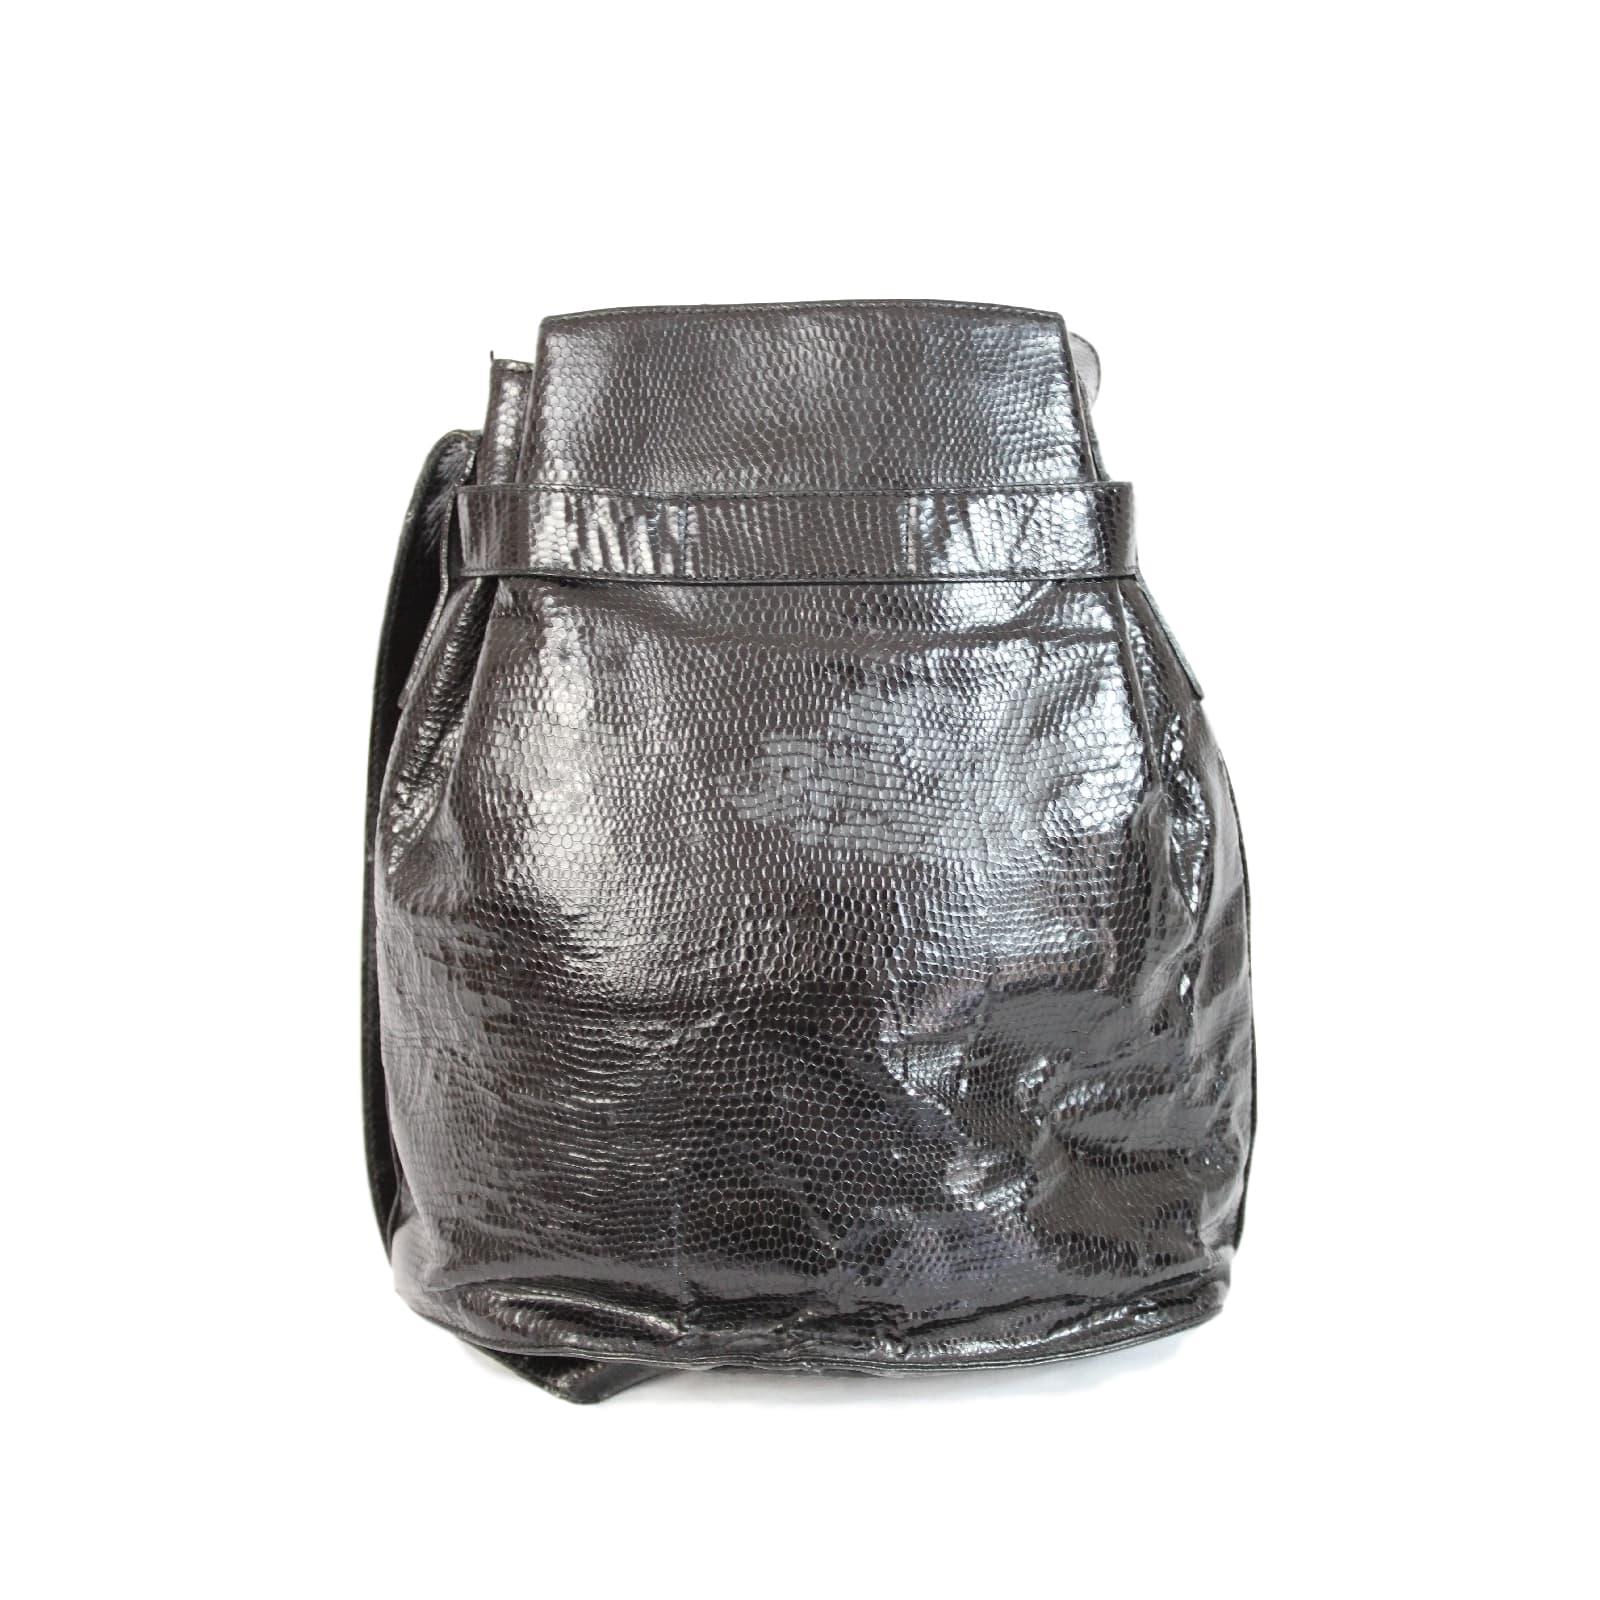 1980s Salvatore Ferragamo Black Python Skin Leather Bucket Bag In Good Condition In Brindisi, Bt